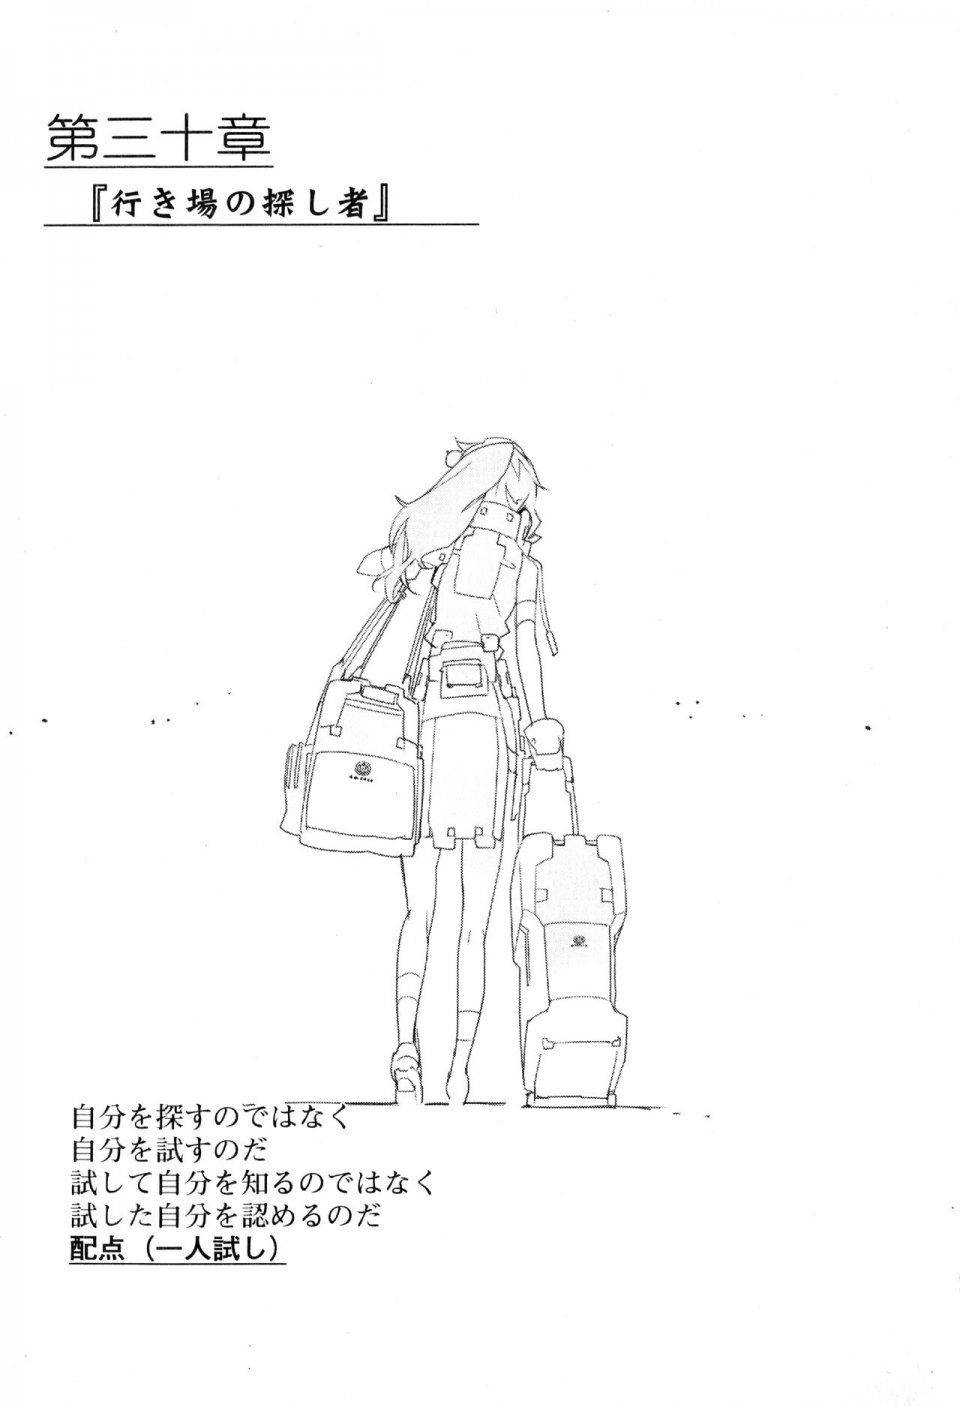 Kyoukai Senjou no Horizon LN Vol 17(7B) - Photo #127